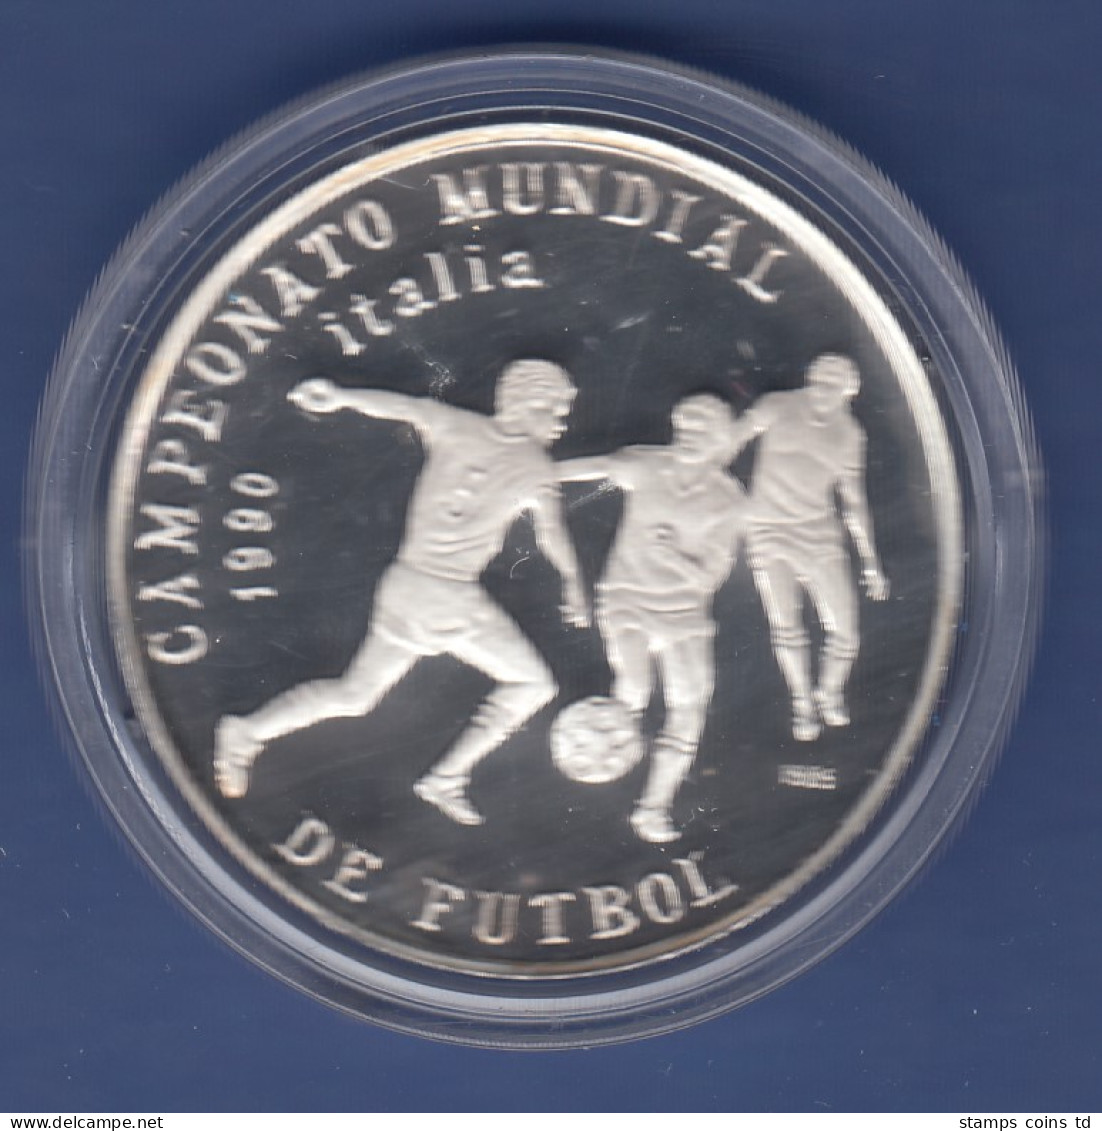 Kuba / Cuba Silbermünze 5 Pesos Fussball WM Italien 1990 3 Spieler Mit Ball - Autres – Amérique